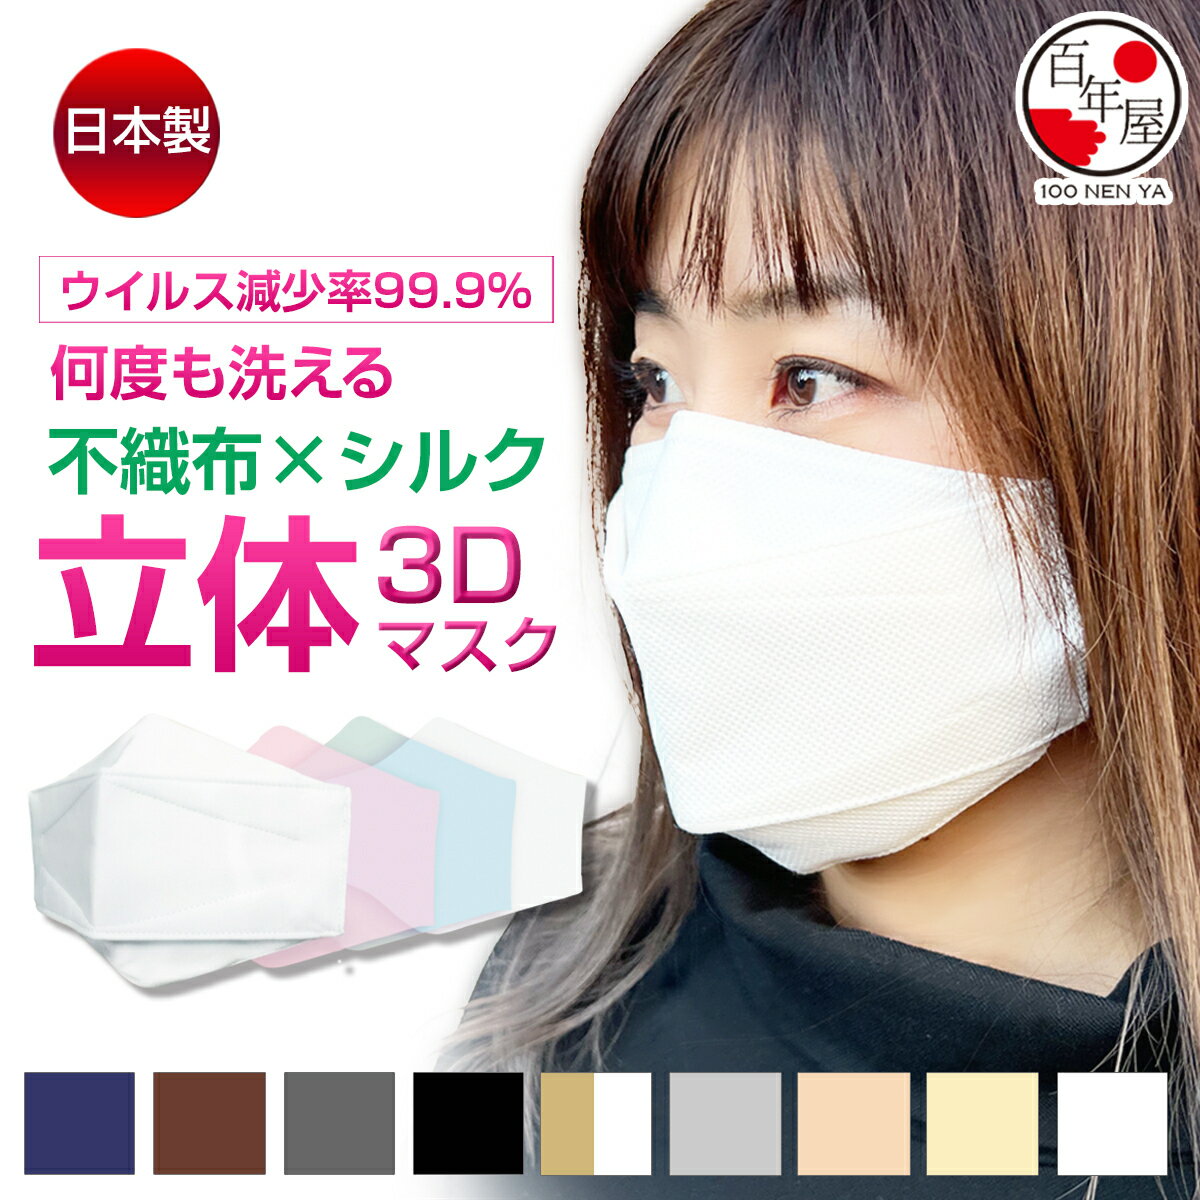 小杉織物 マスク kf94 日本製 小さめ 大きめ 洗えるマスク 不織布 シルク カラー 抗菌 立体 9色展開 4サイズ展開